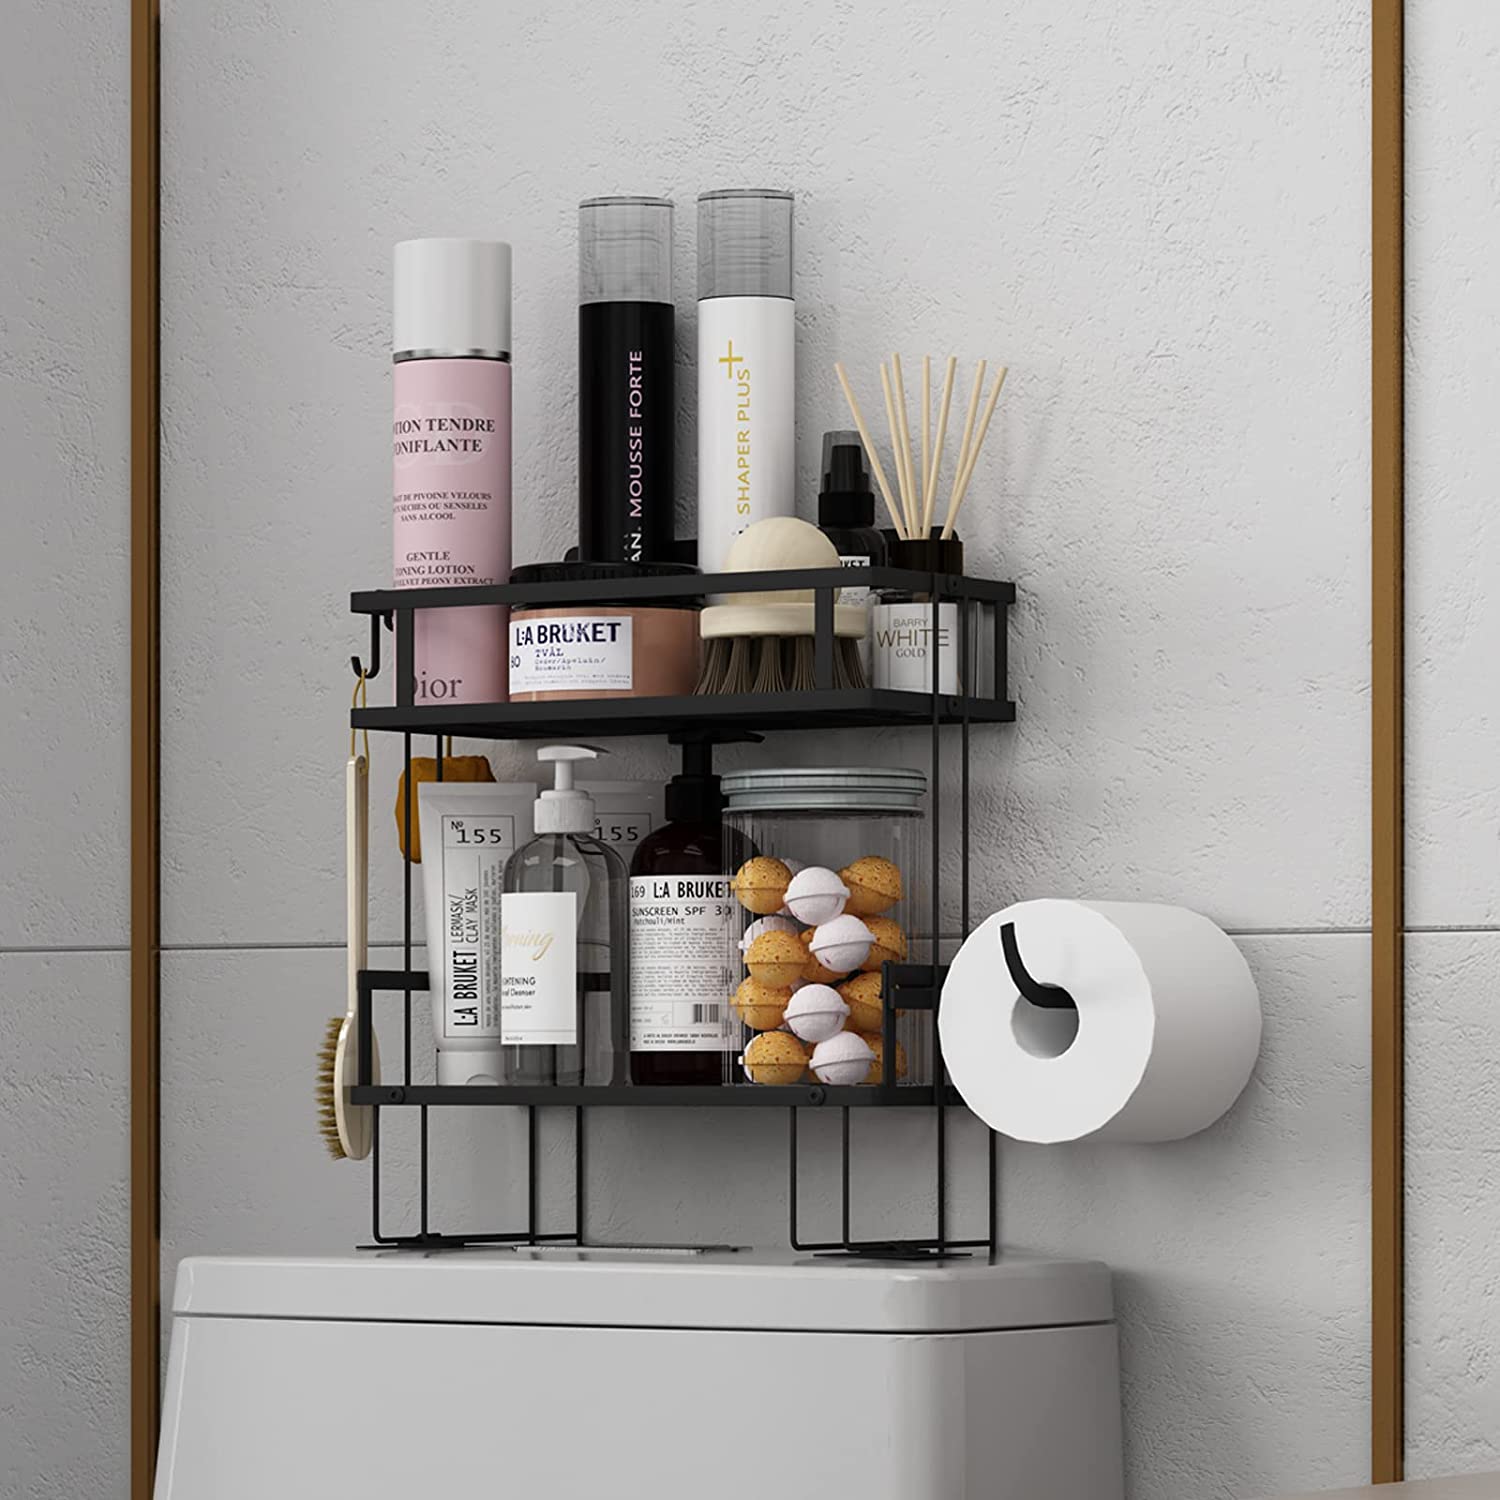 Wall Mounted Bathroom Shelves Floating Shelf Shower Hanging Basket